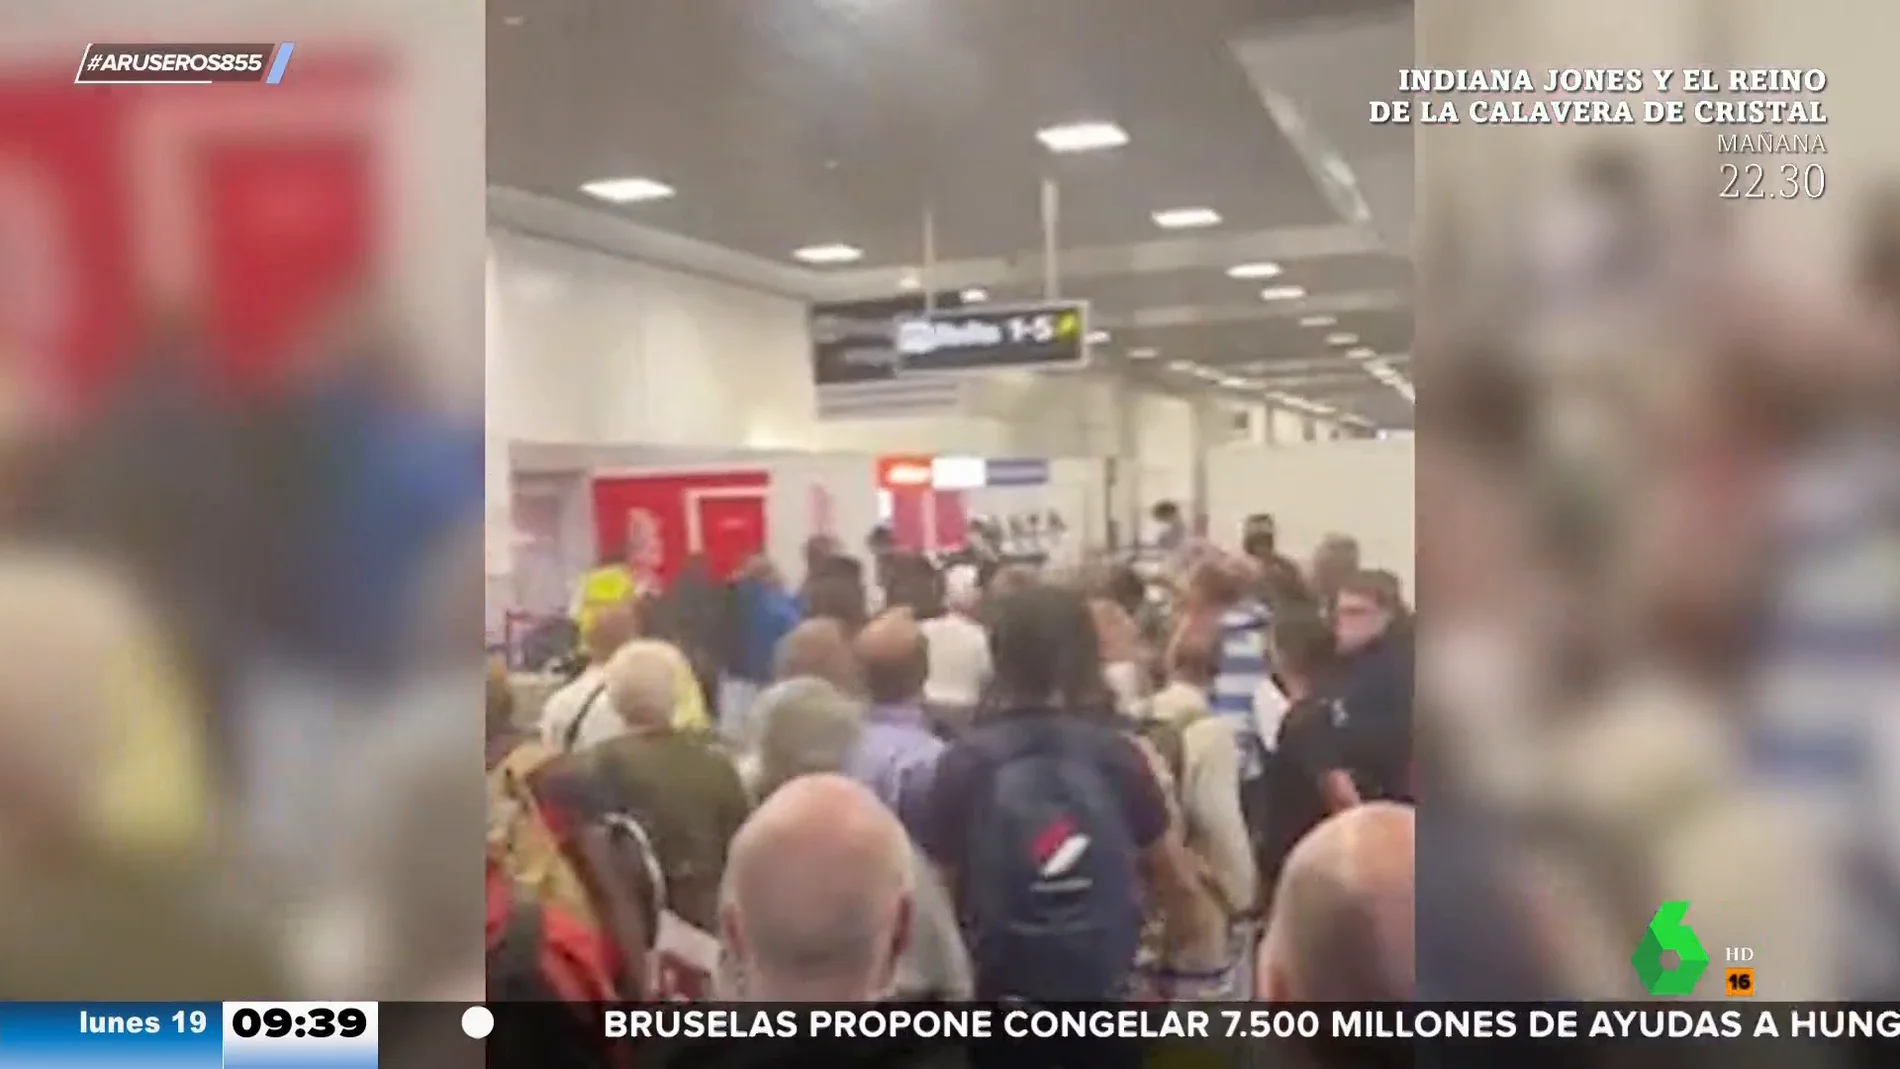 La monumental pelea a puñetazos en un aeropuerto tras la pérdida del equipaje de los pasajeros